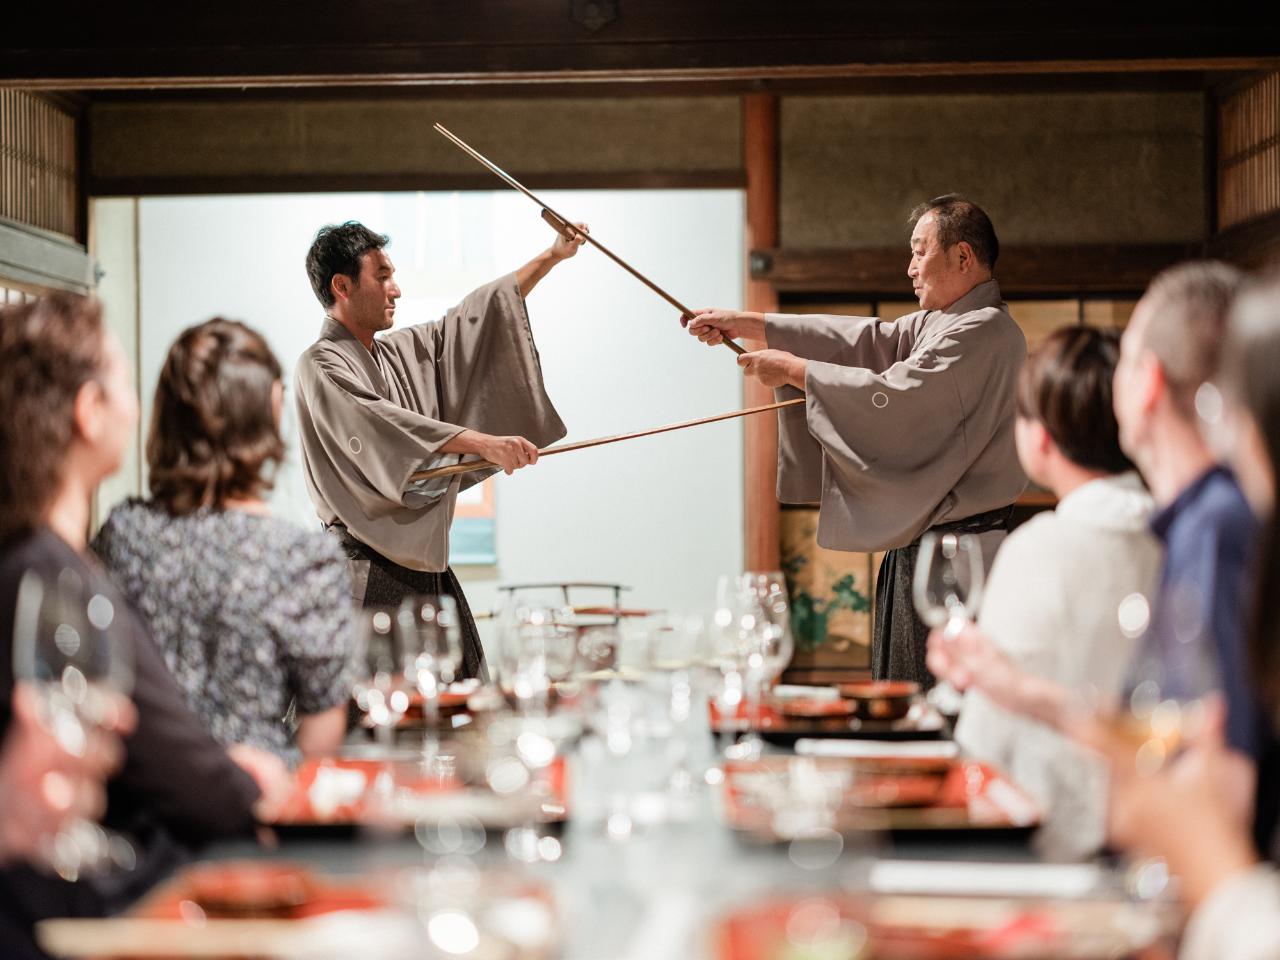 Samurai Premium Dinner with Samurai culture